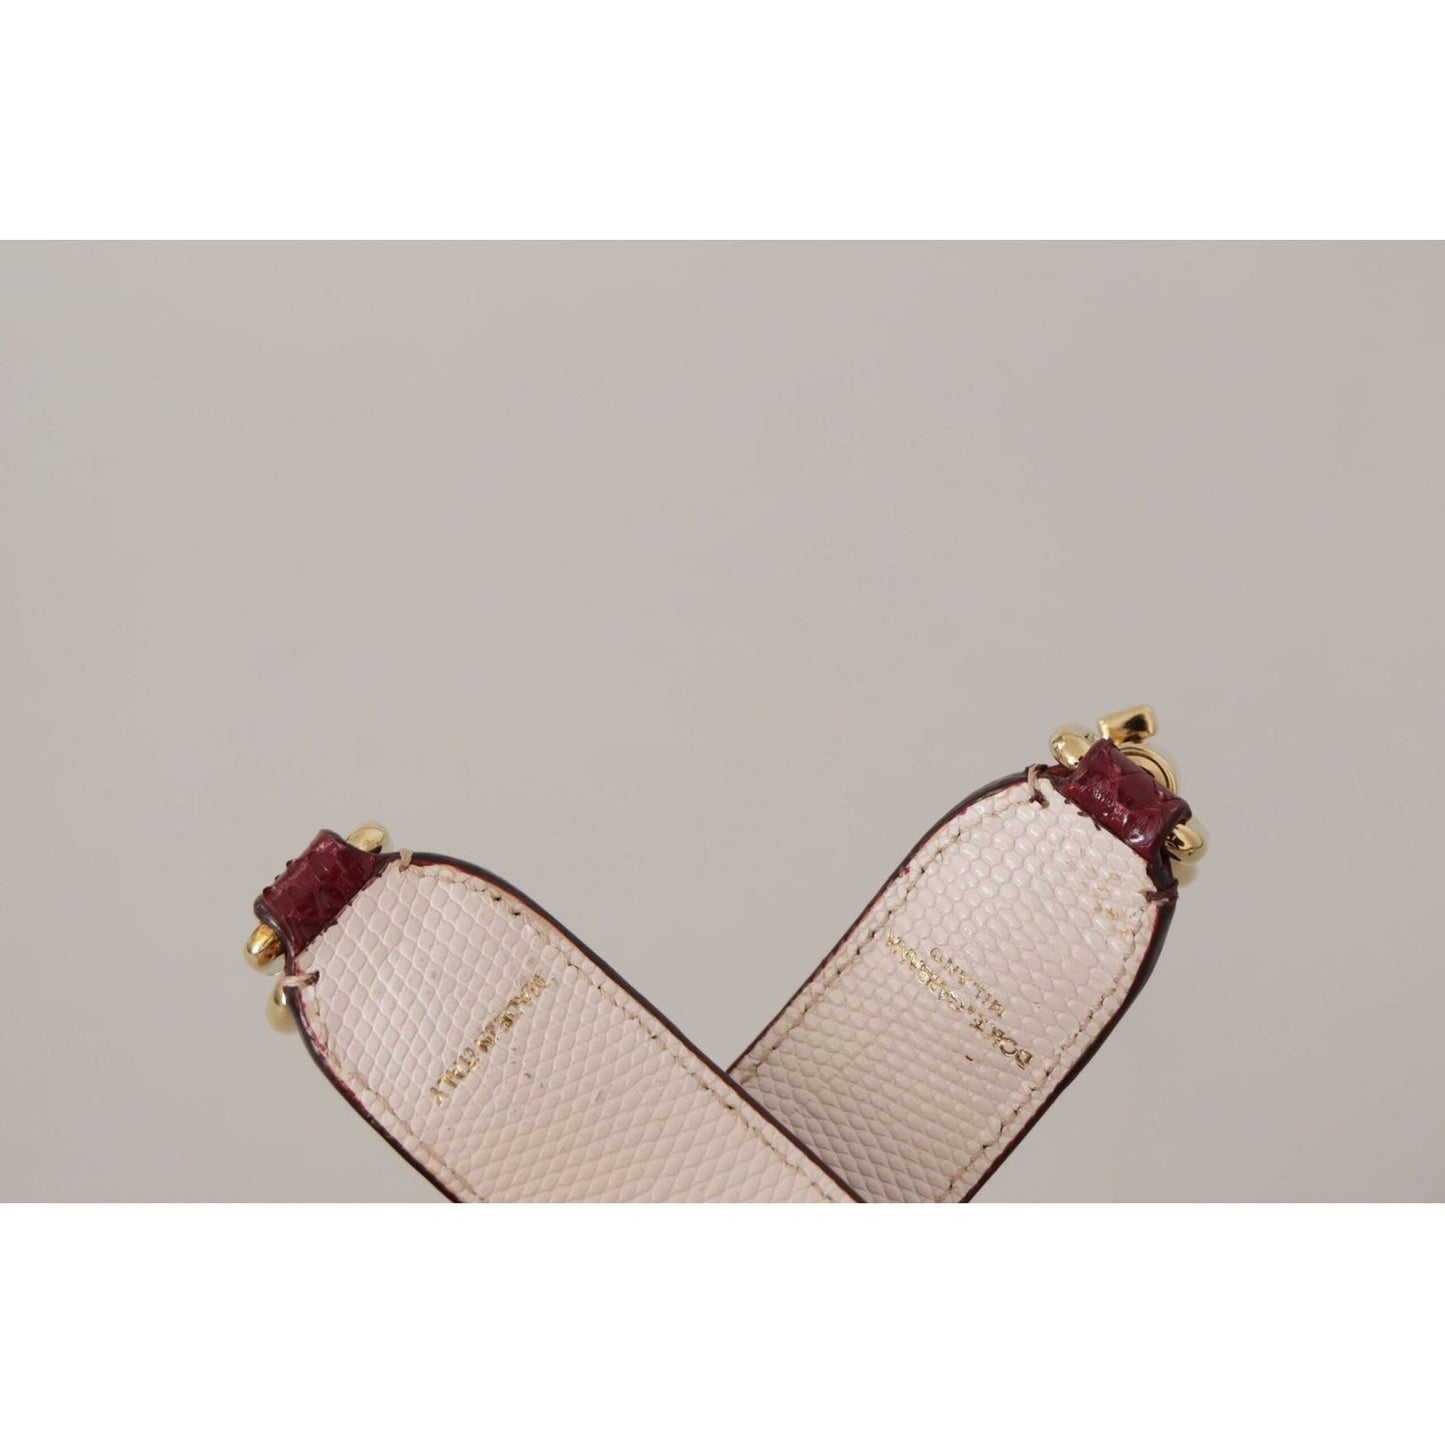 Dolce & Gabbana Elegant Python Leather Bag Strap in Bordeaux bordeaux-leather-crystals-bag-shoulder-strap IMG_9717-1-scaled-91121b6d-813.jpg